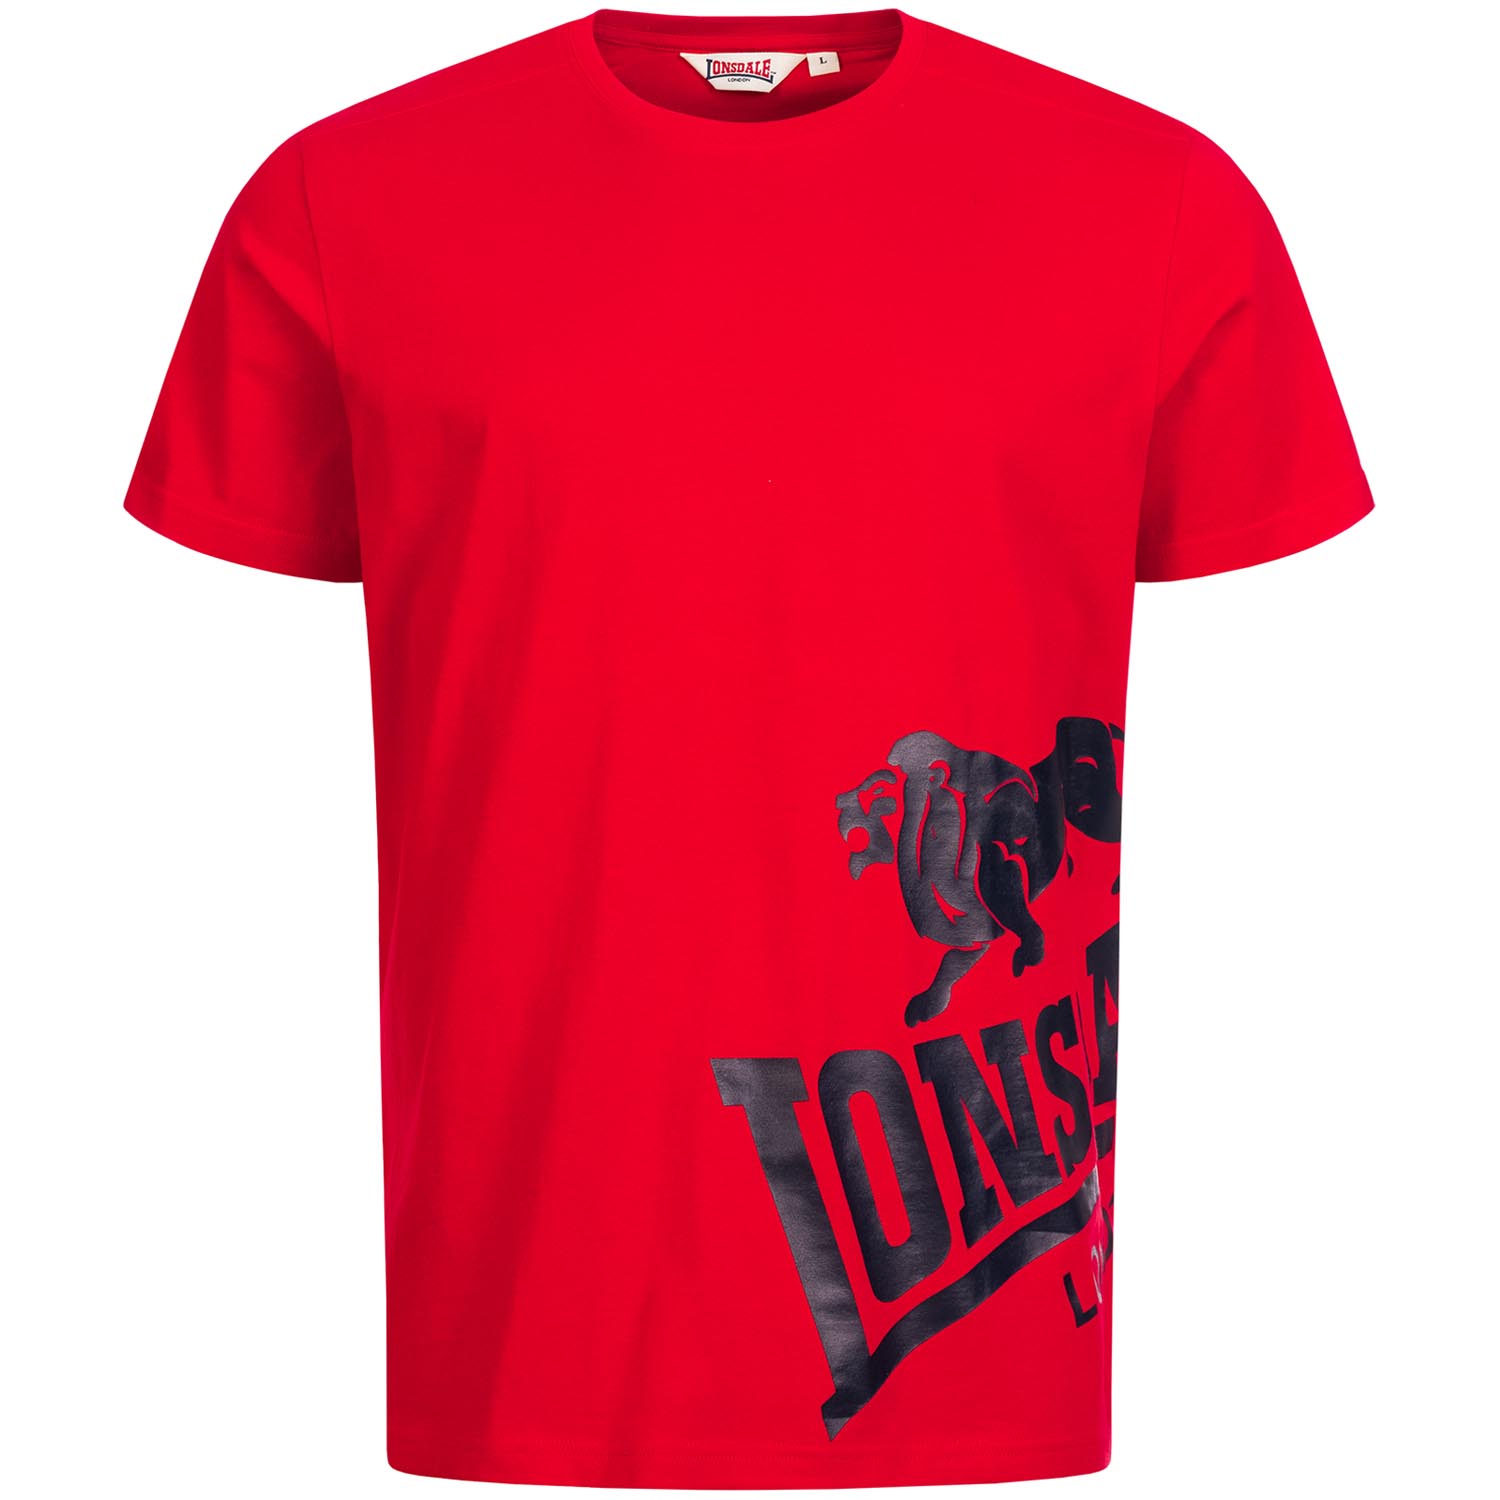 Lonsdale T-Shirt, Dereham, red